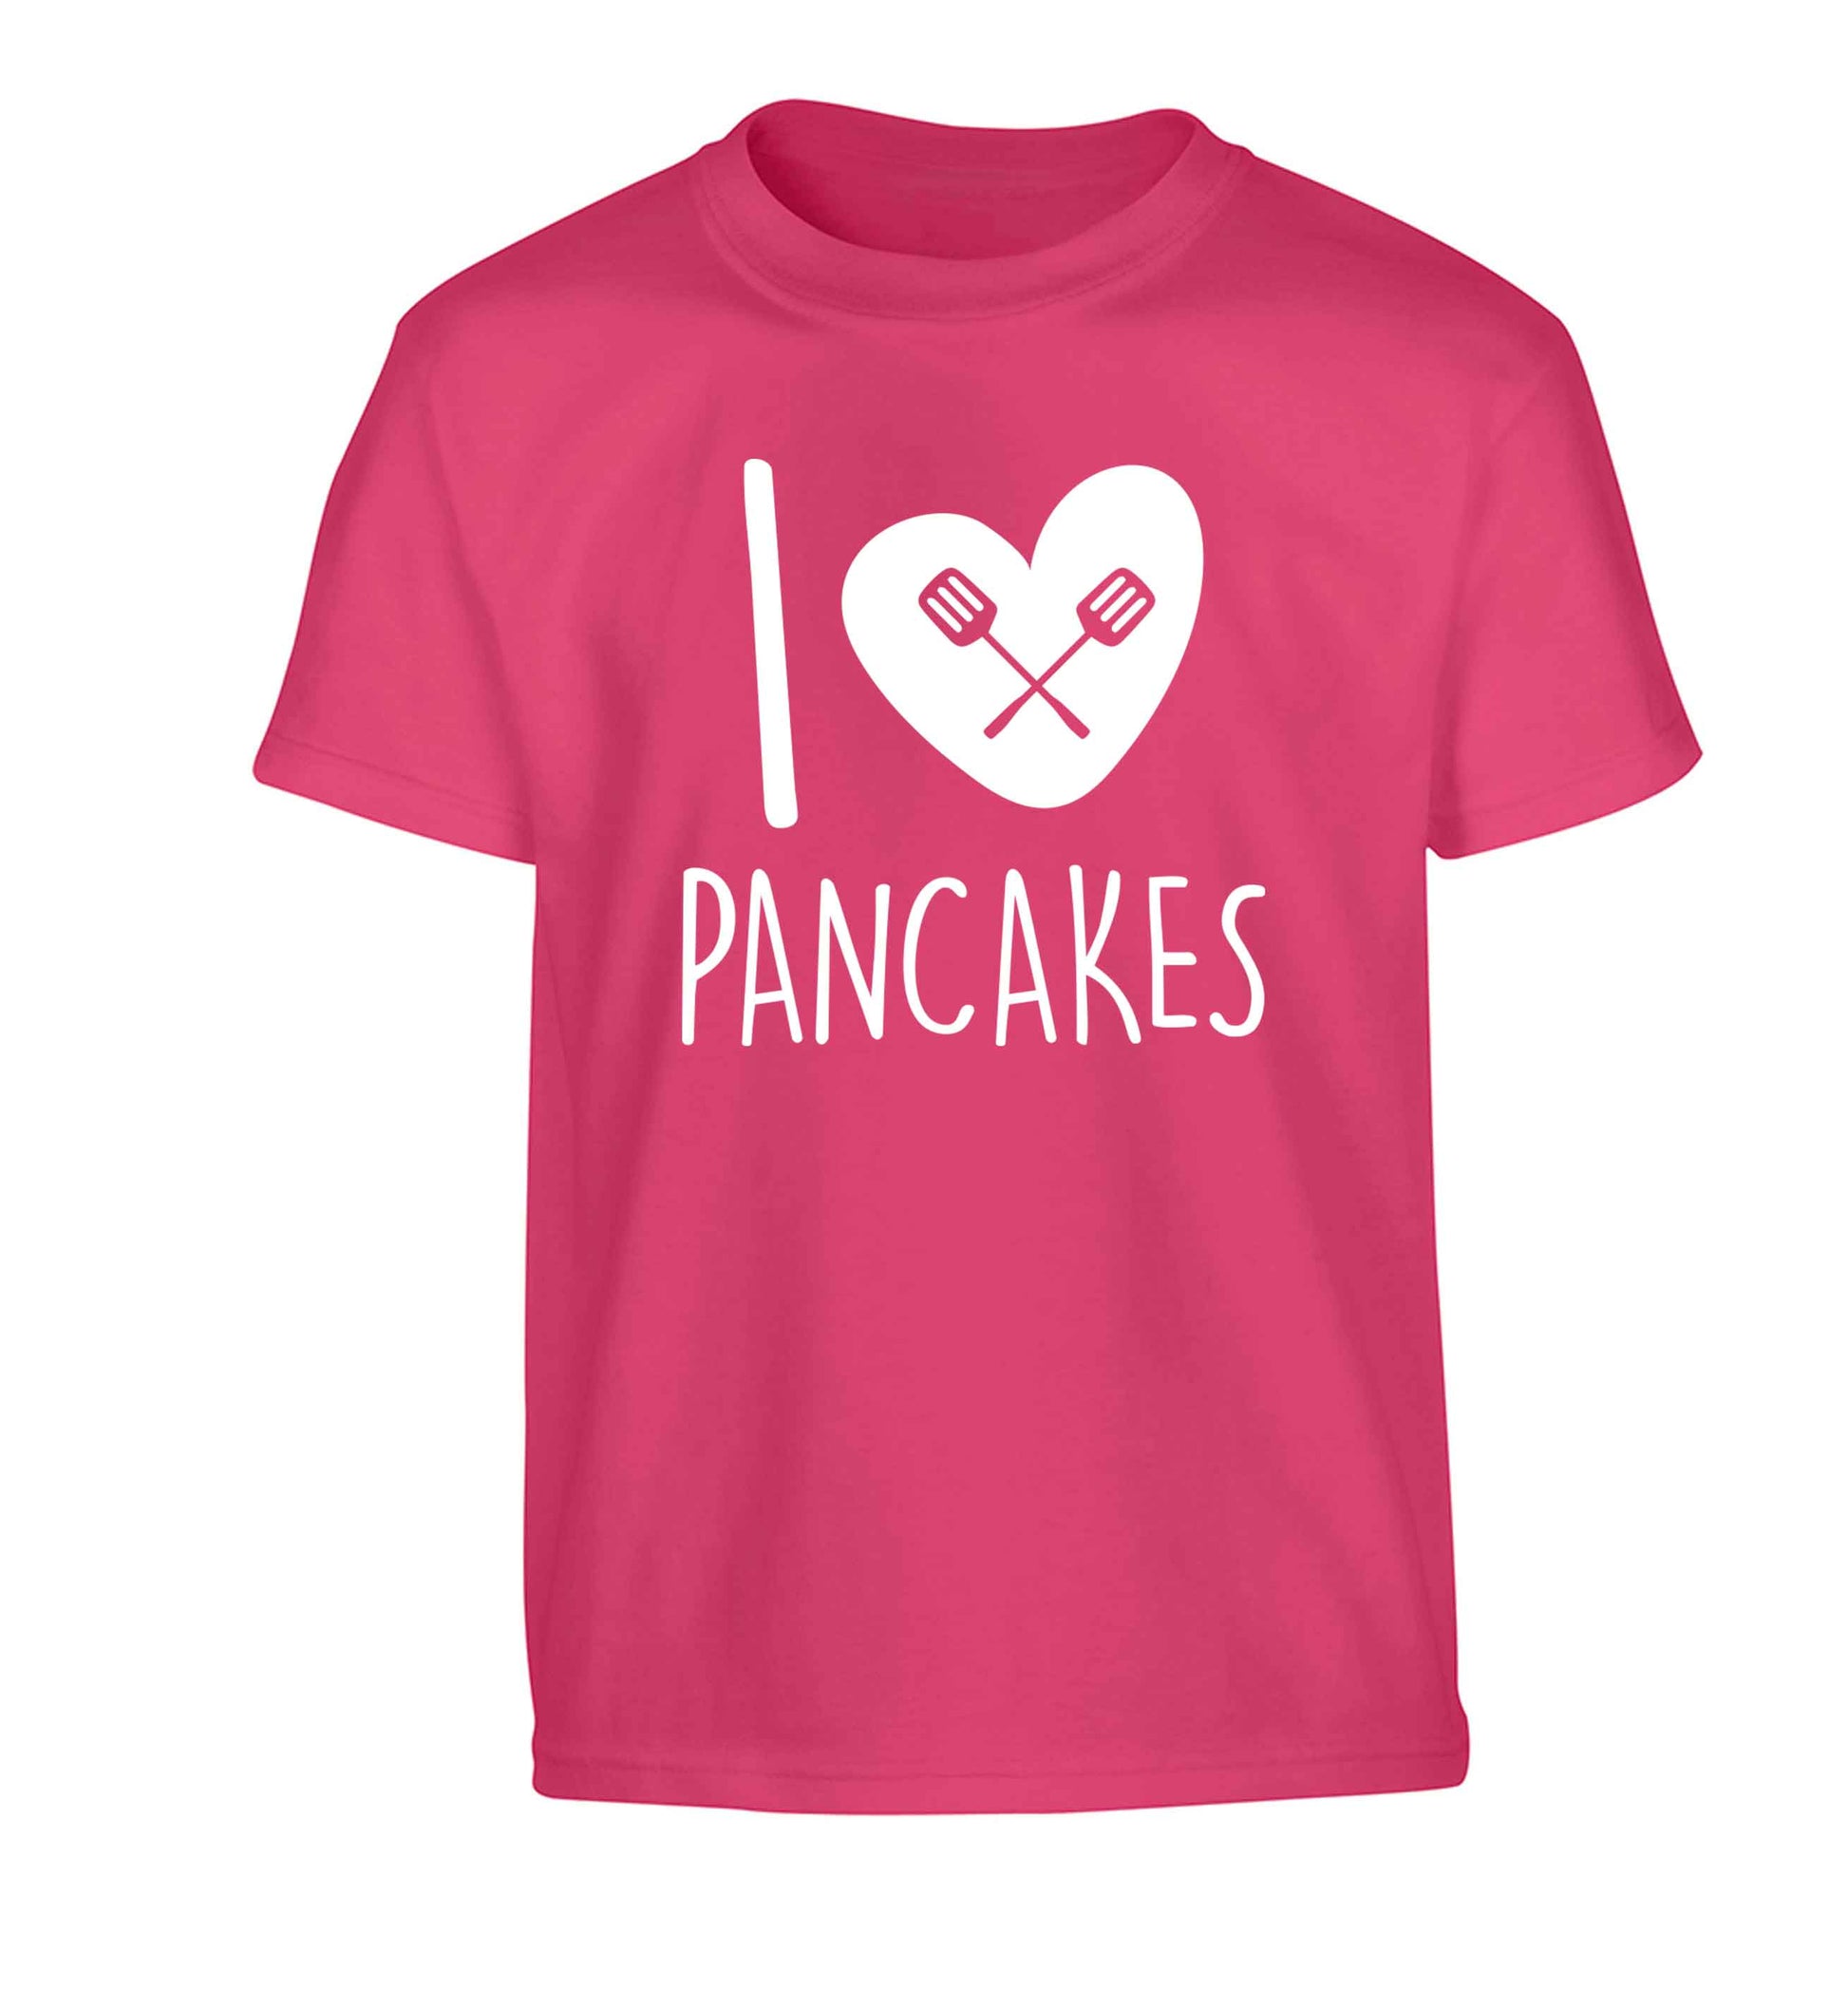 I love pancakes Children's pink Tshirt 12-13 Years